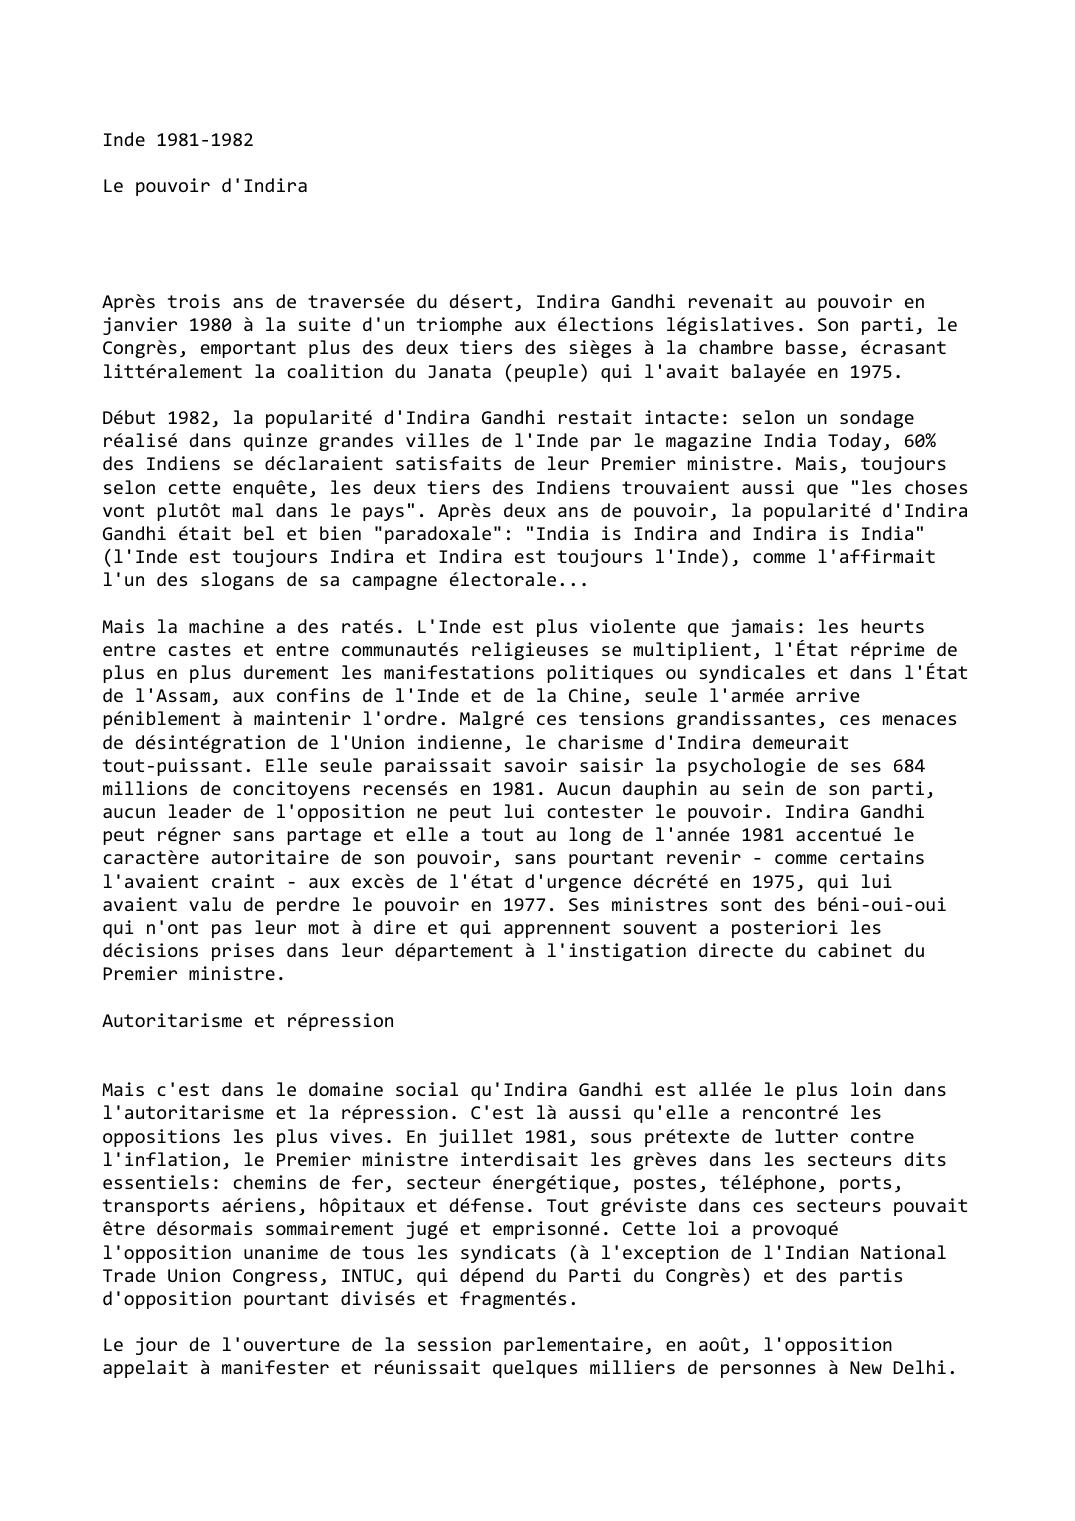 Prévisualisation du document Inde (1981-1982)

Le pouvoir d'Indira